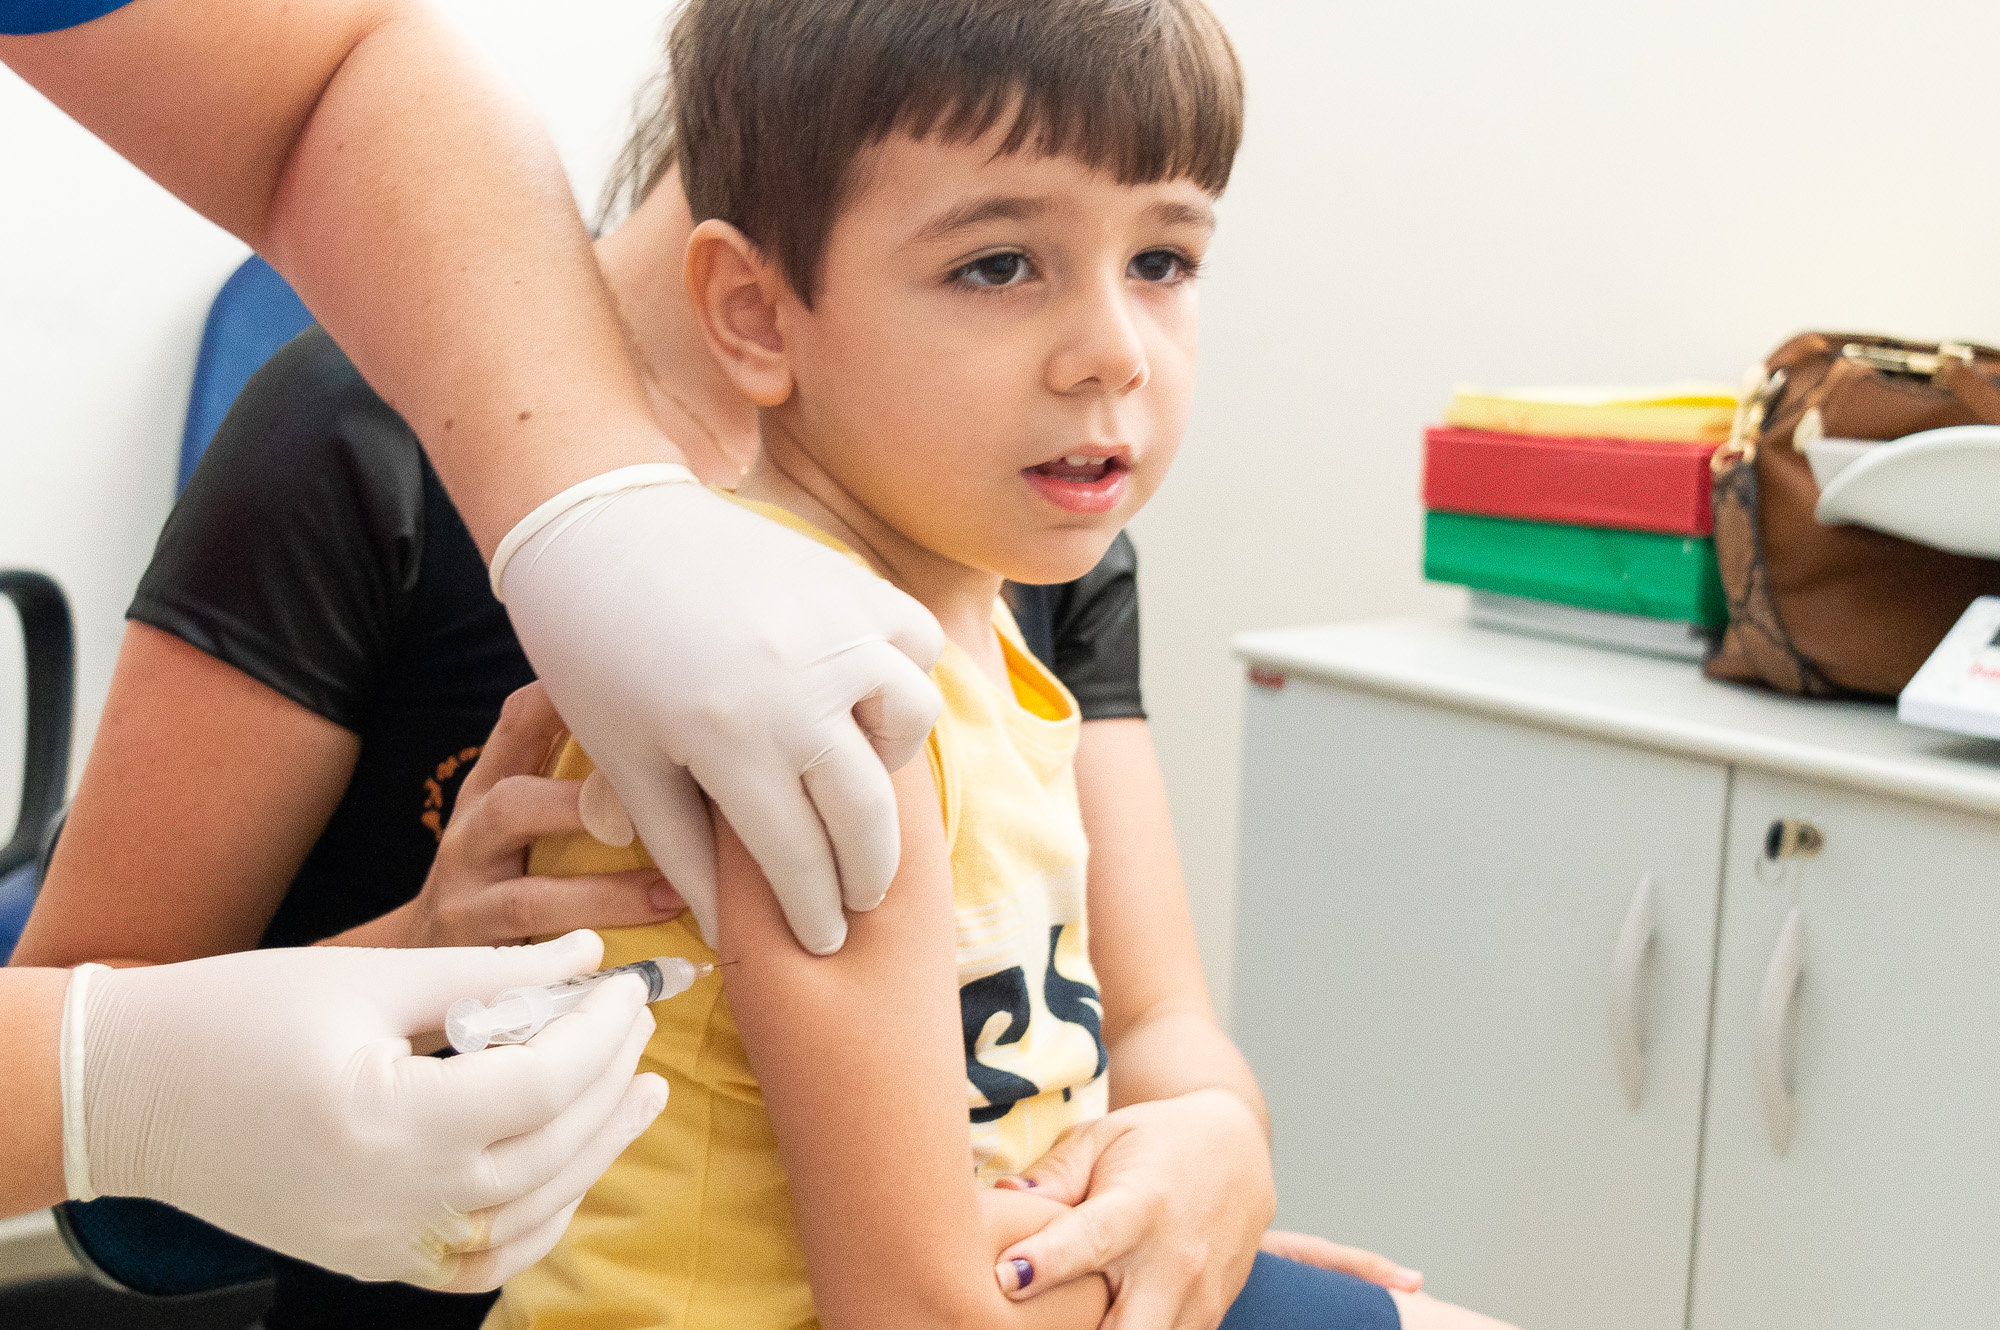 Criança é vacinada em Urupês. Foto: Thomas Volpato Moutropoulos / Prefeitura Municipal de Urupês.